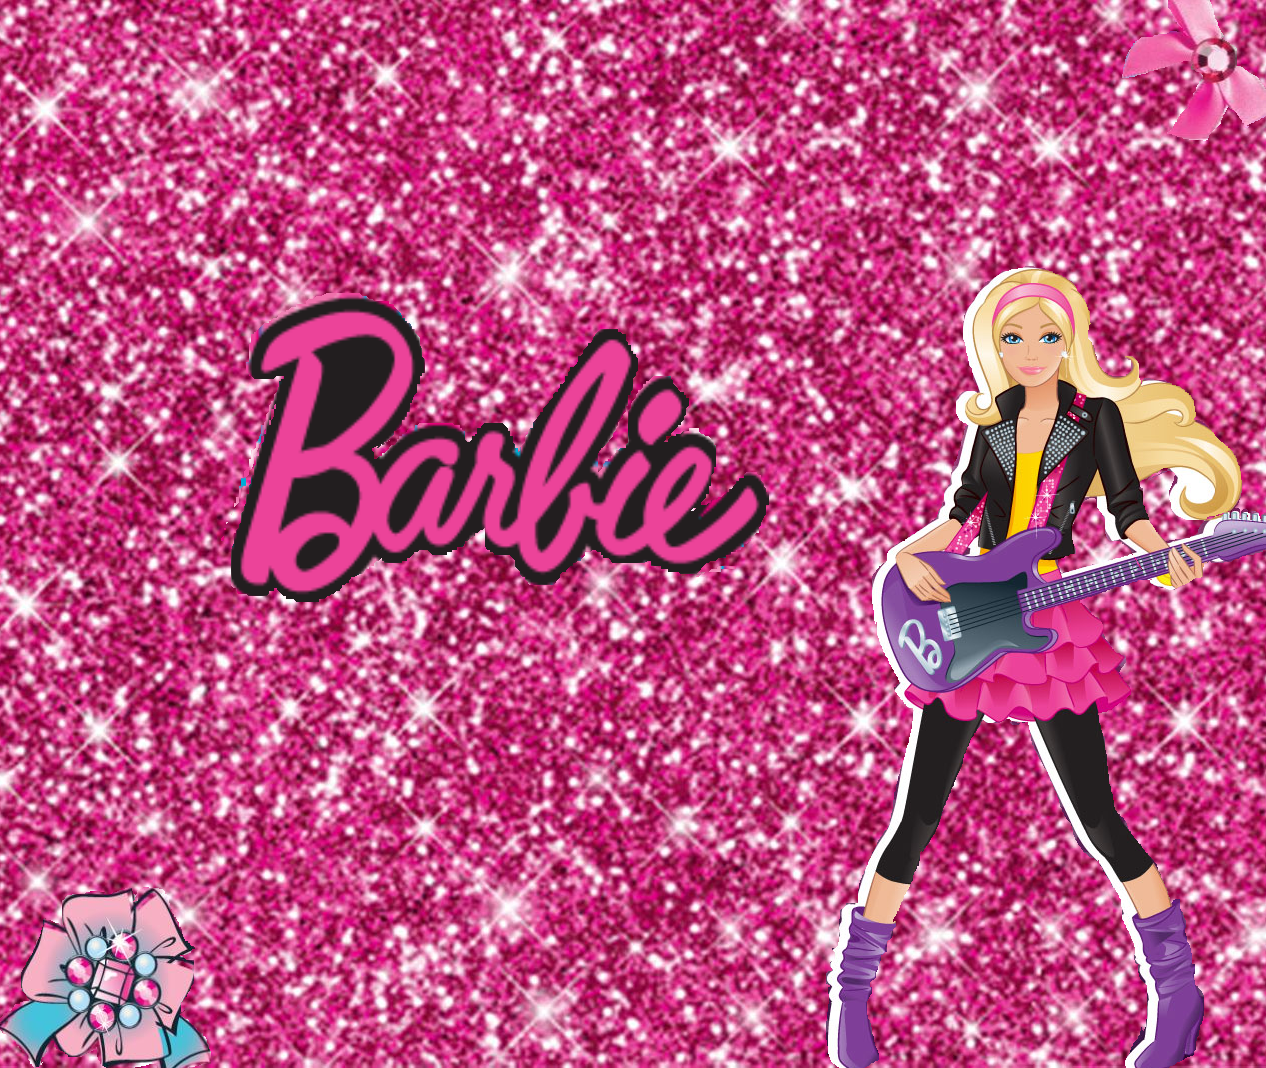 Fondos de pantalla de Barbie - Imagui